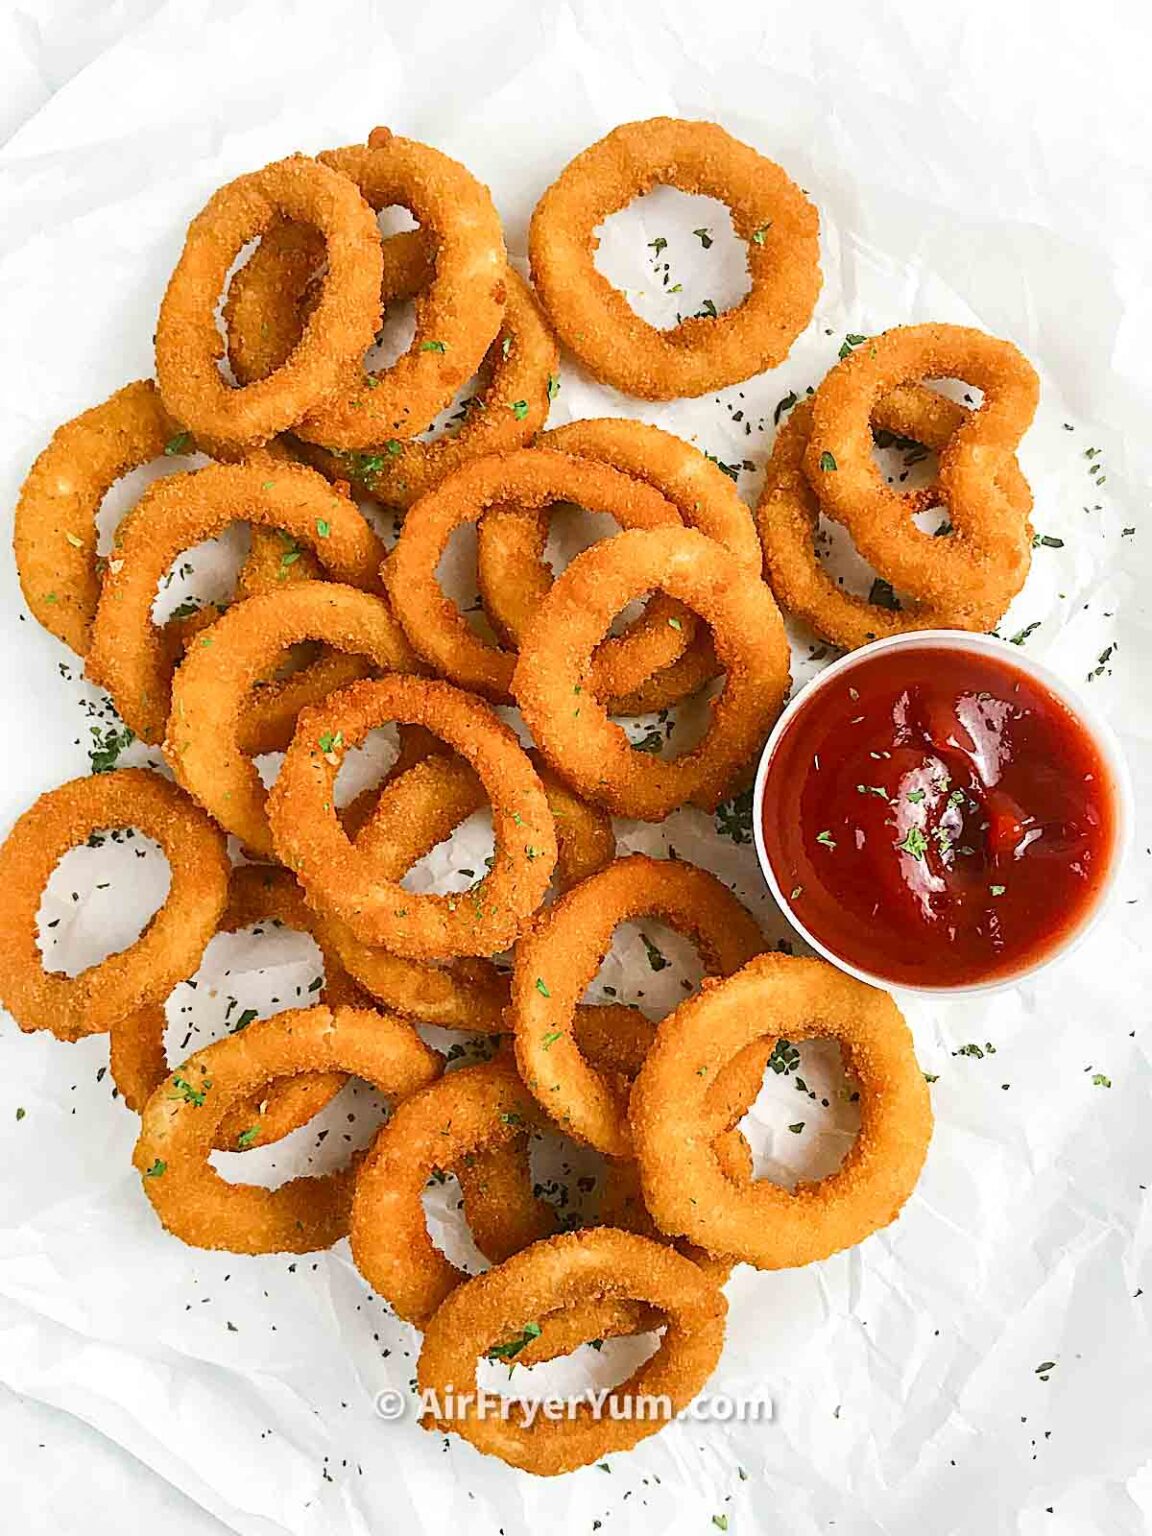 Frozen Onion rings in air fryer - Air Fryer Yum